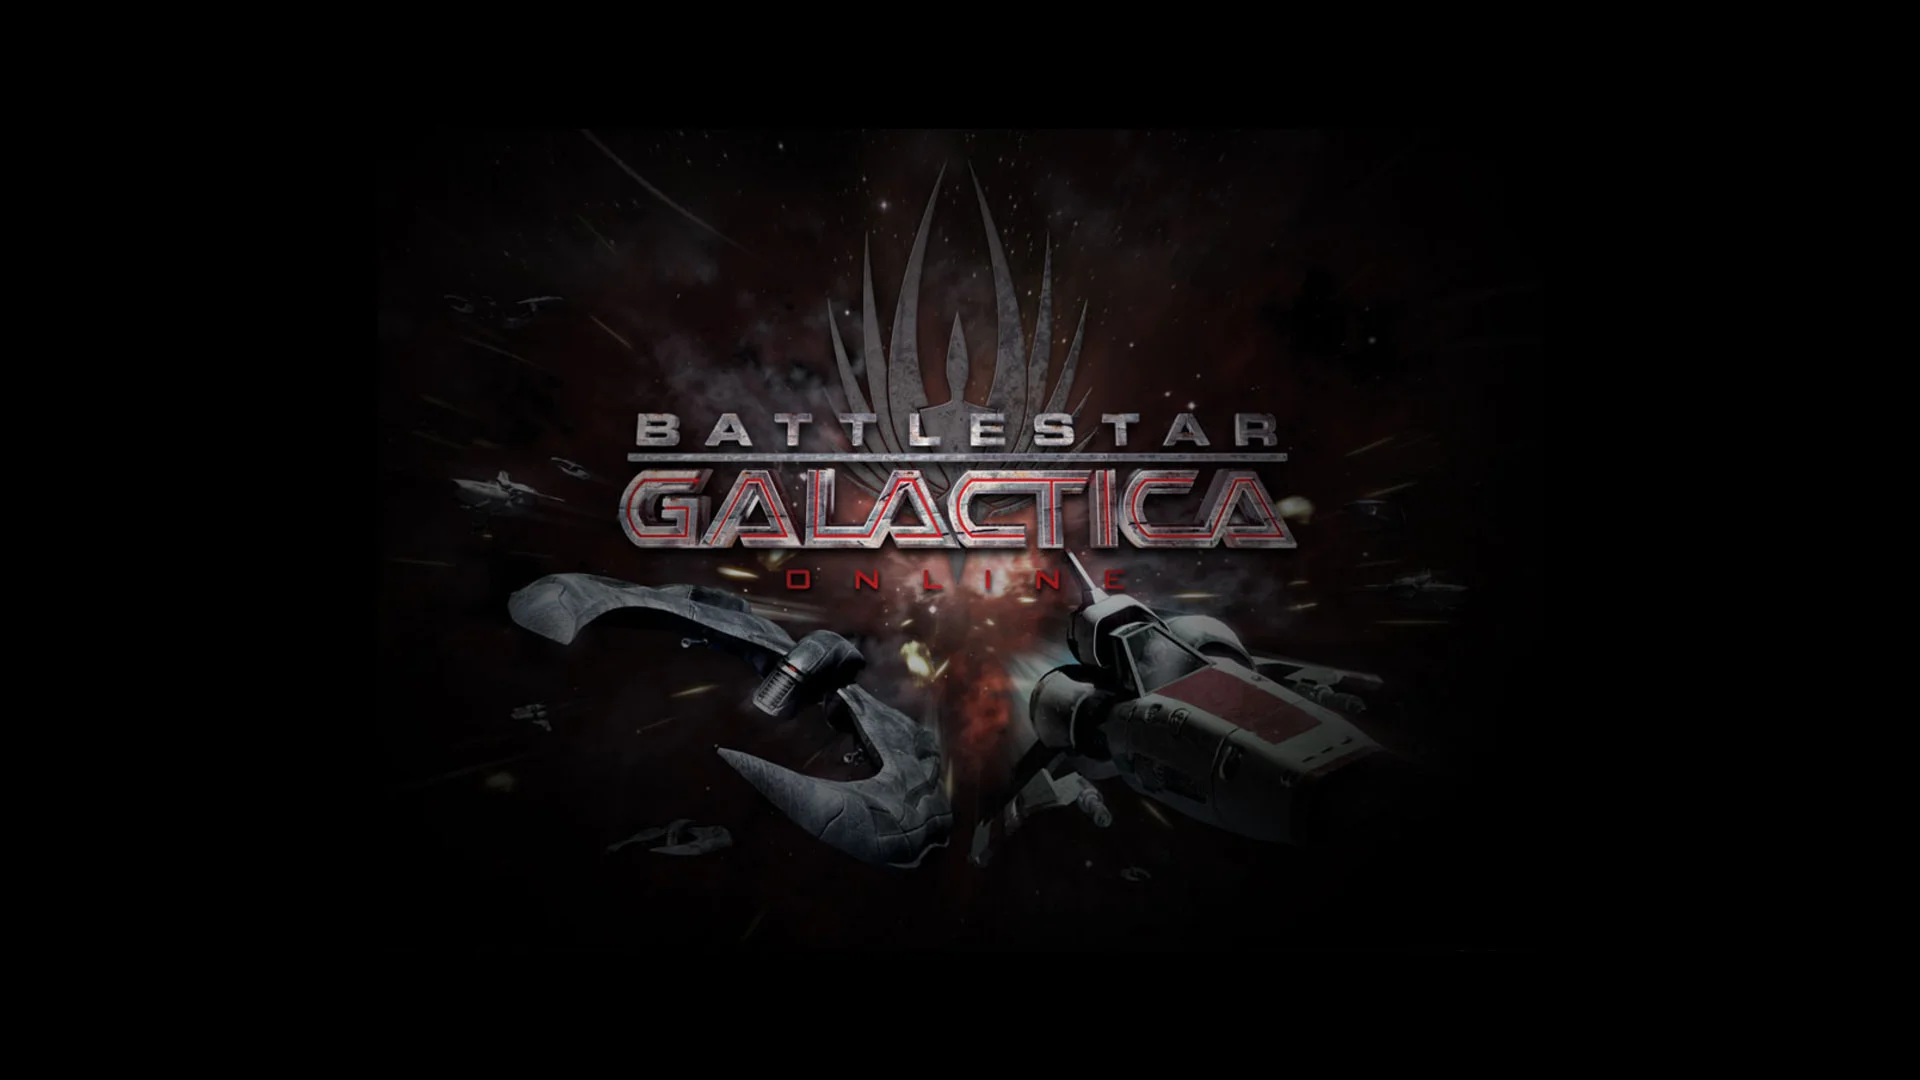 Battlestar galactica wallpaper hd